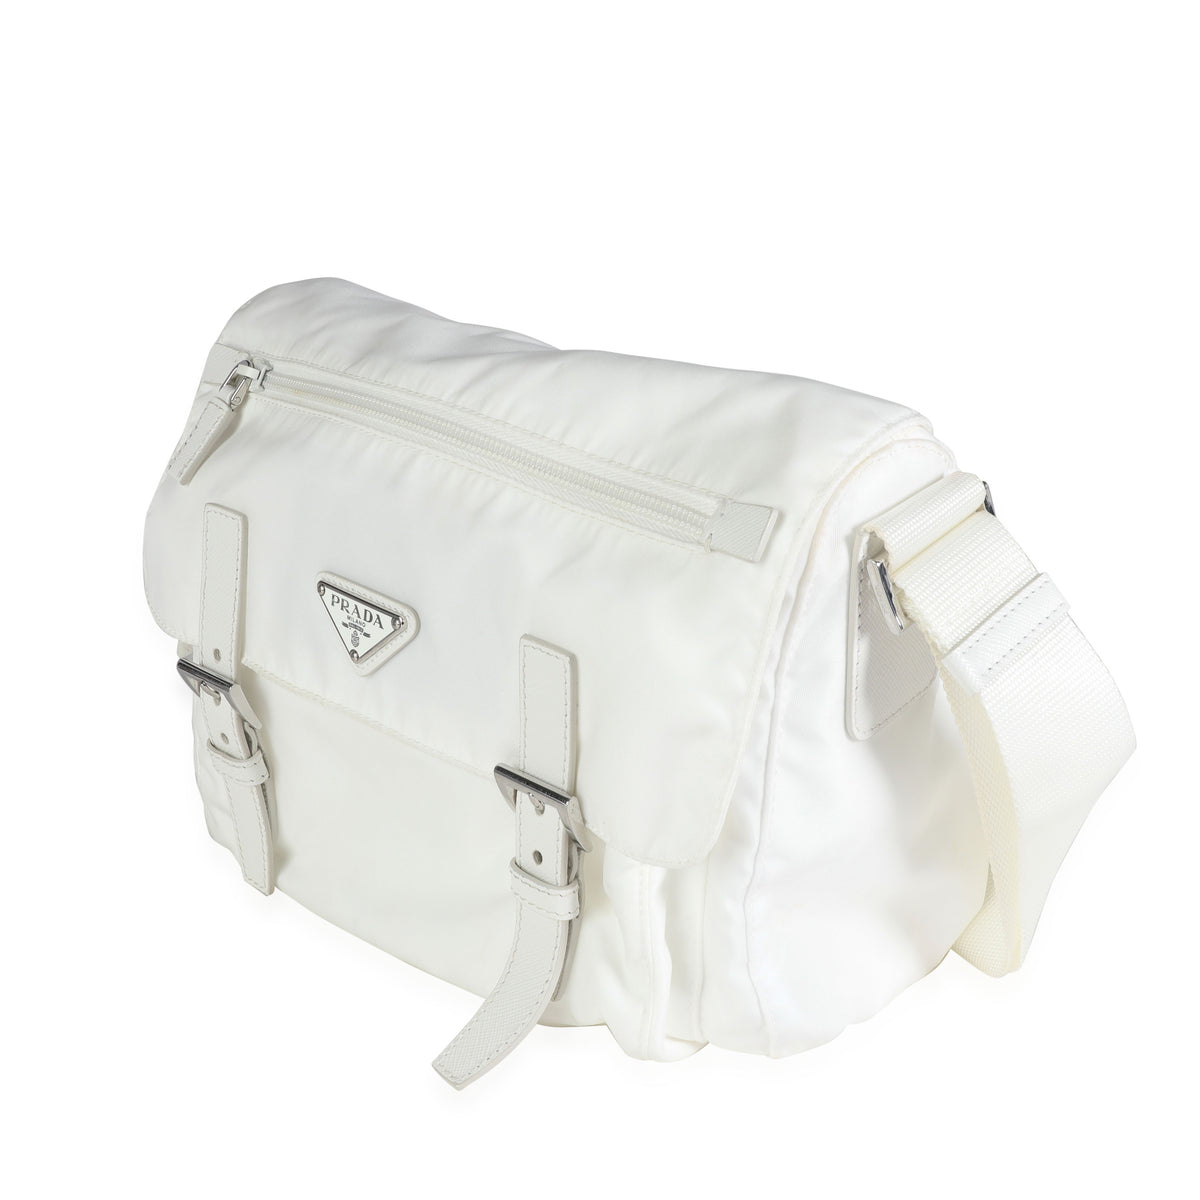 White Re-nylon Shoulder Bag